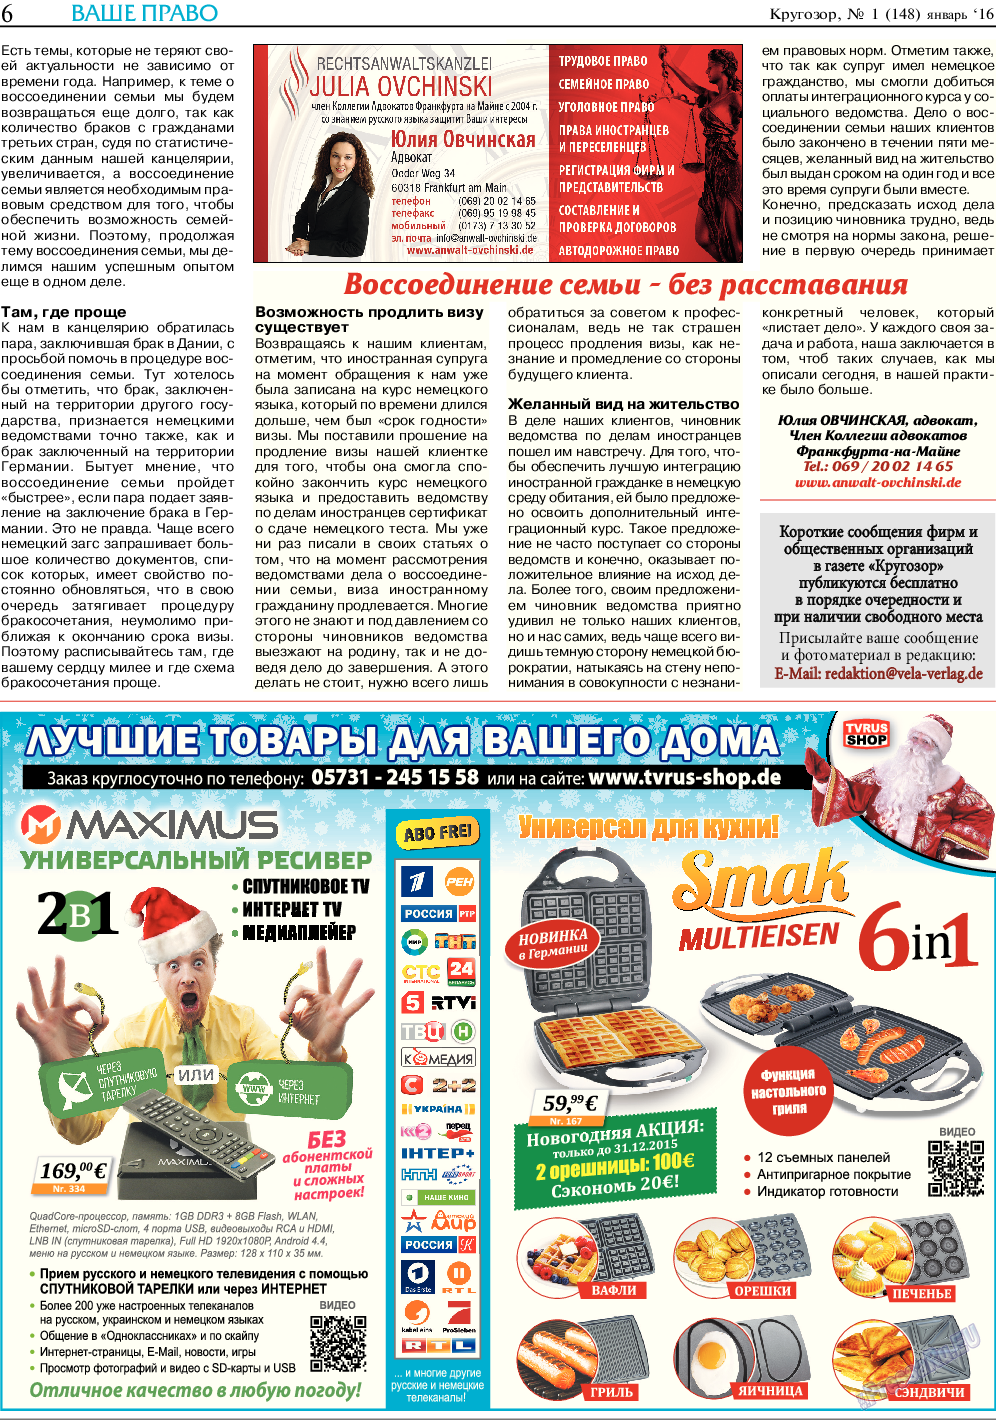 Кругозор (газета). 2016 год, номер 1, стр. 6